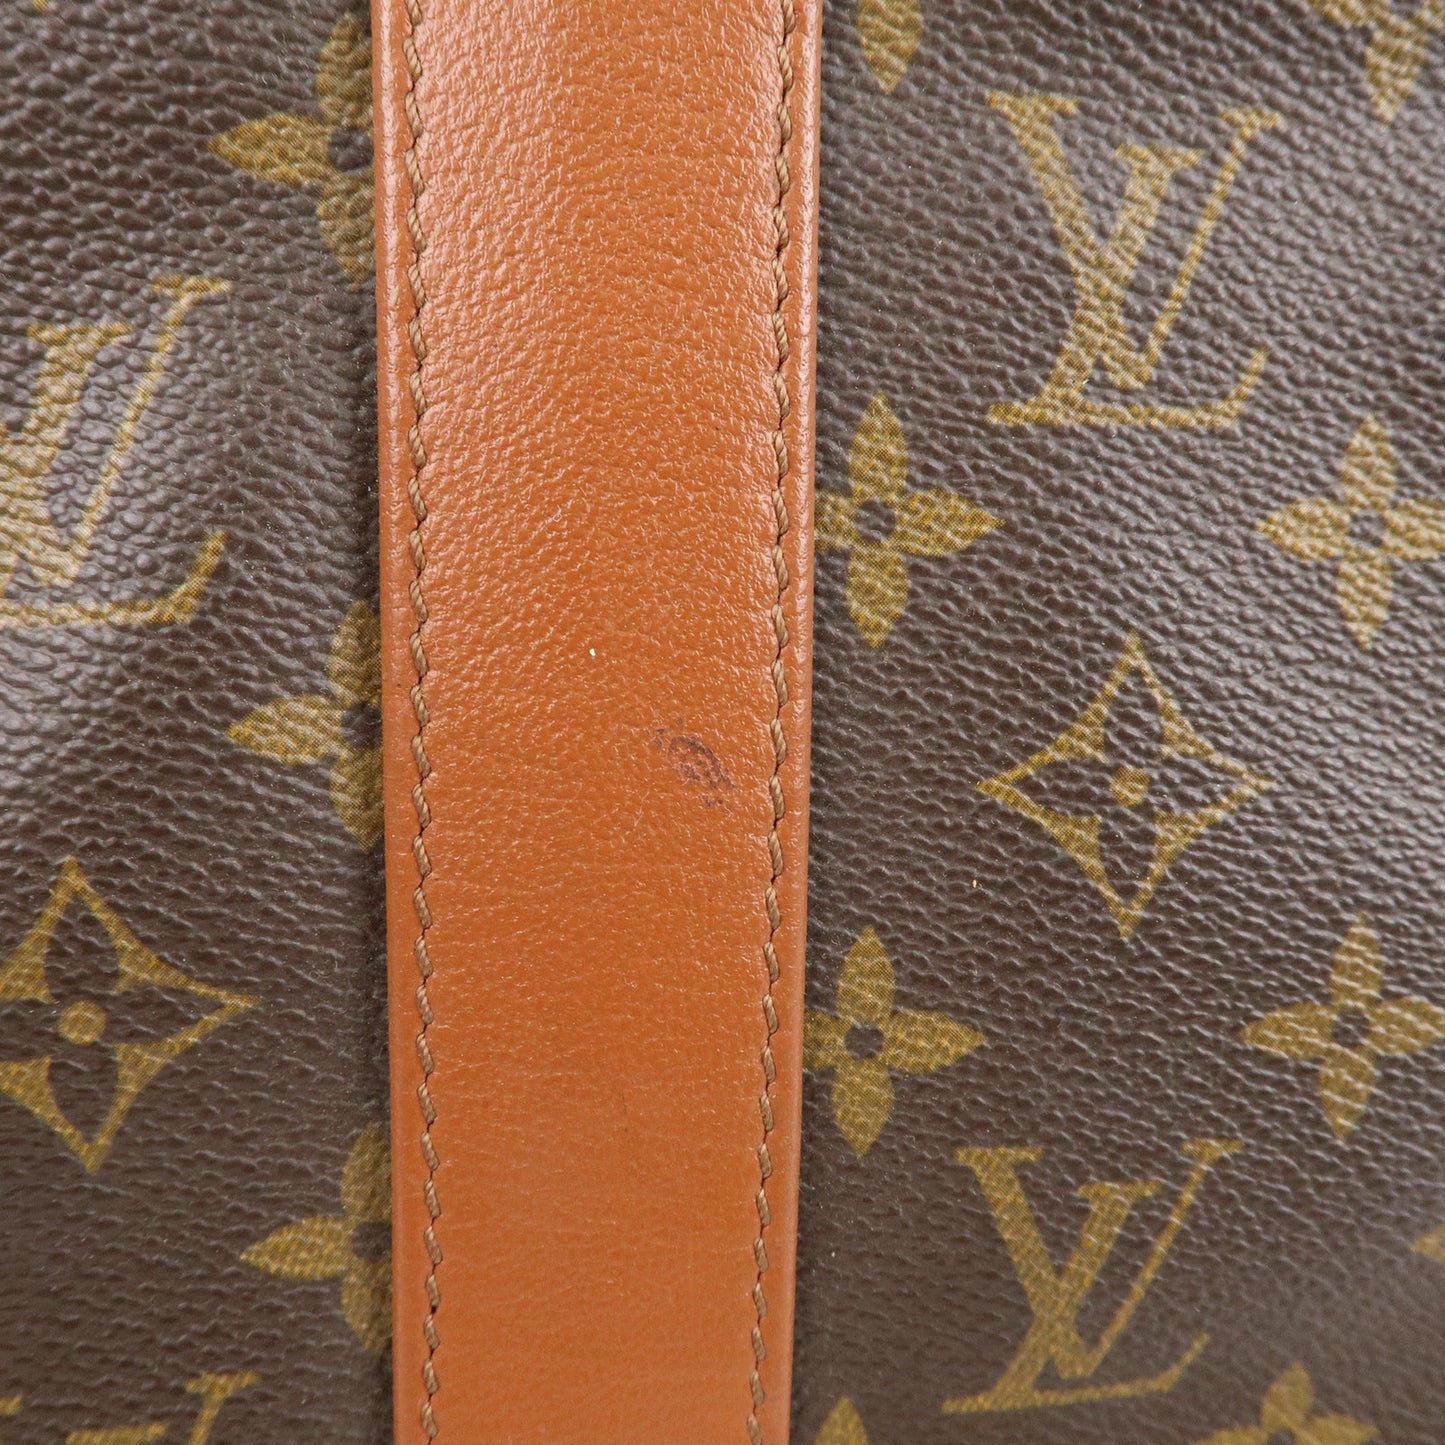 Louis Vuitton borsa modello Sac Weekend PM Tote M42425